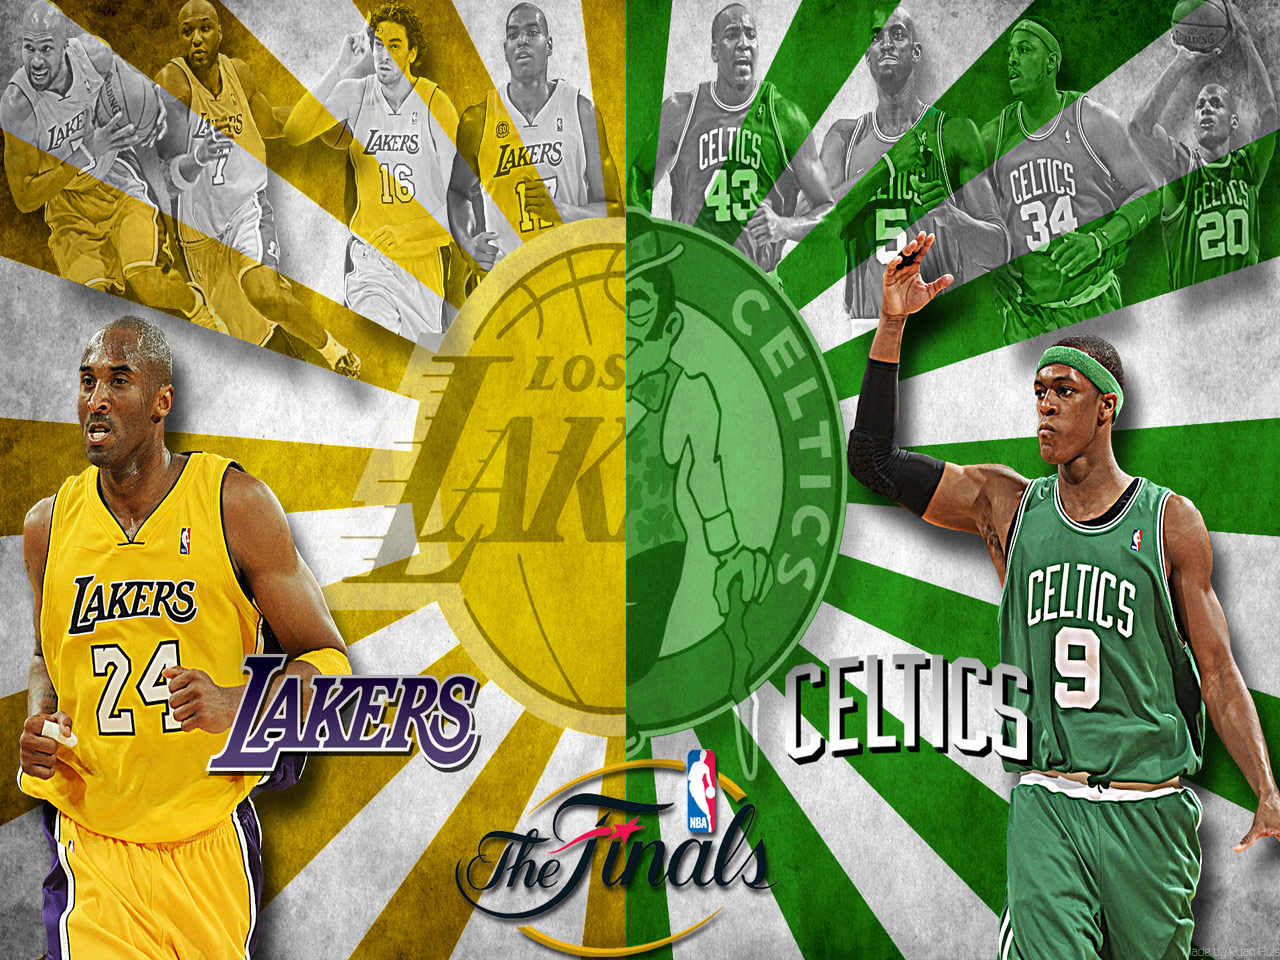 NBA Finals 2010 Celtics vs Lakers Wallpaper1280 x 960